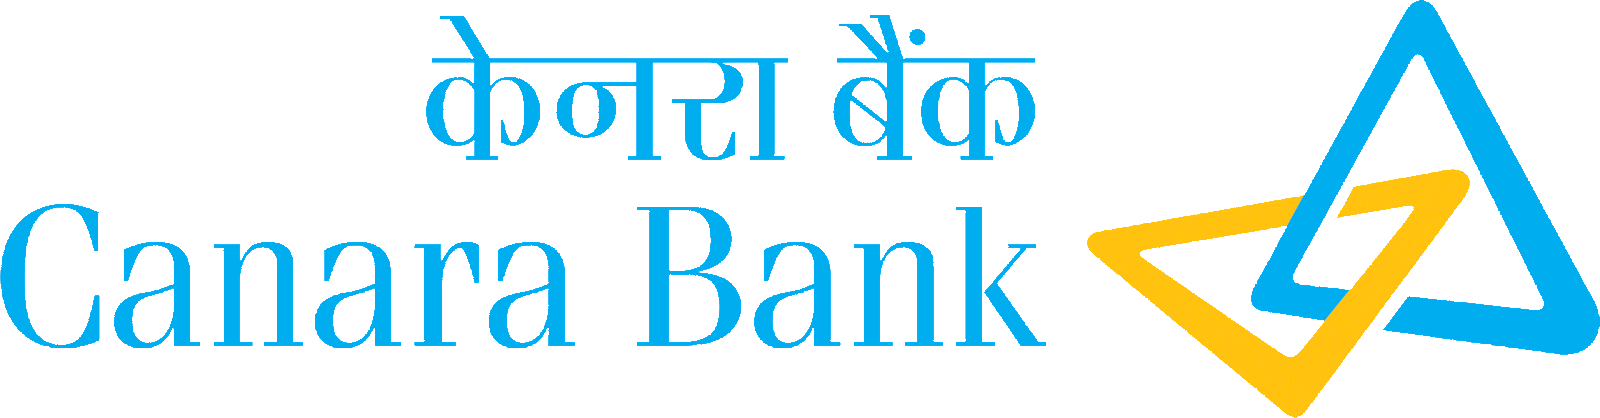 Canara Bank Brand Logo